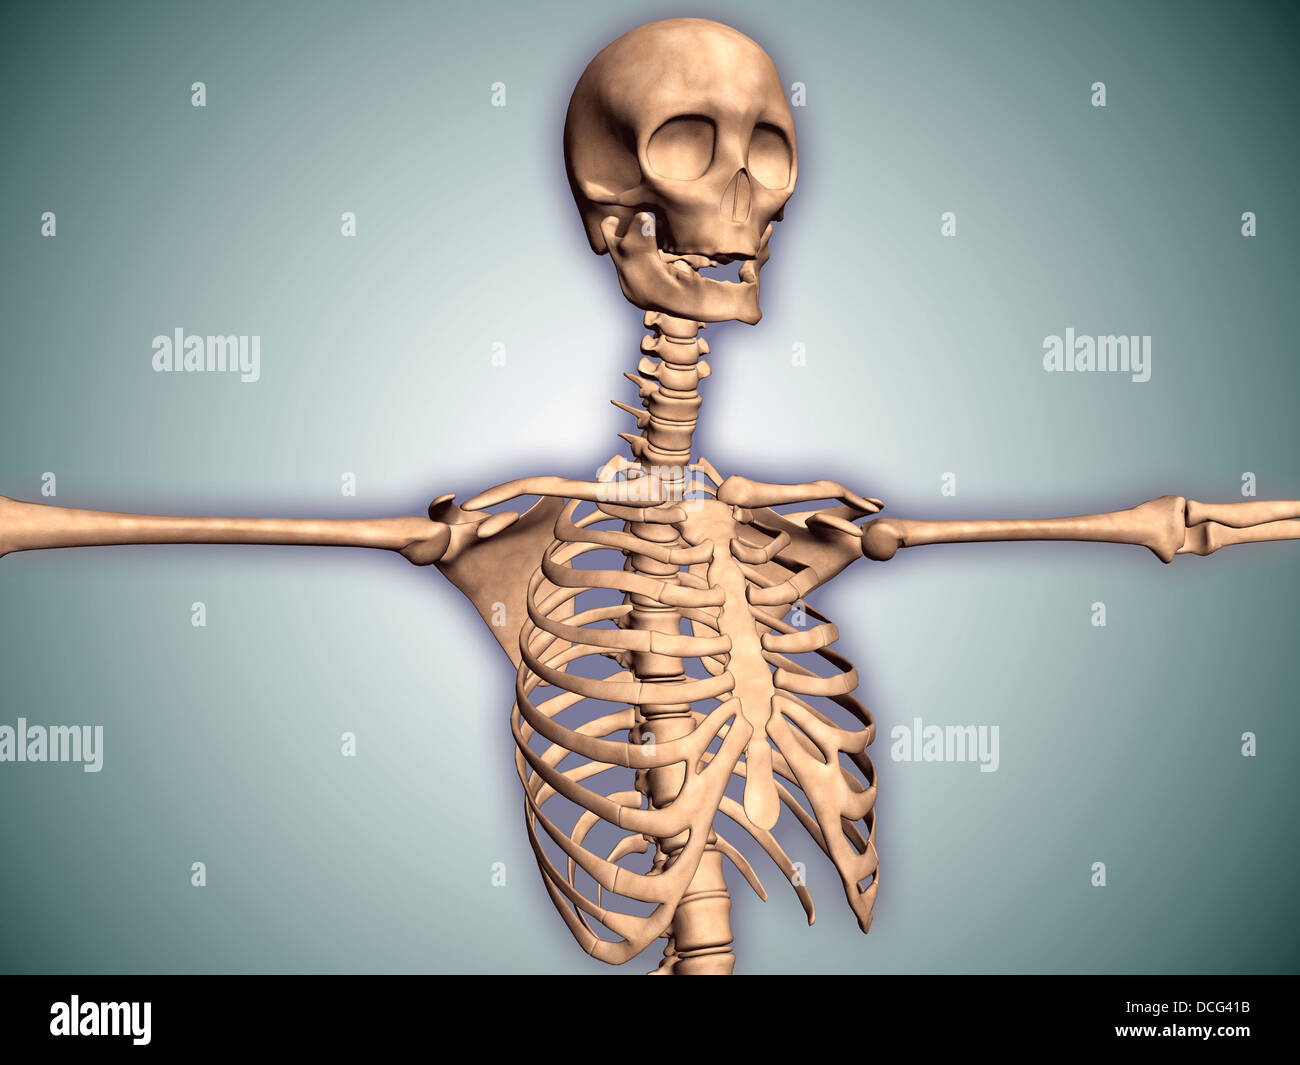 Immagine concettuale umana di una gabbia toracica e midollo spinale con il cranio. Foto Stock